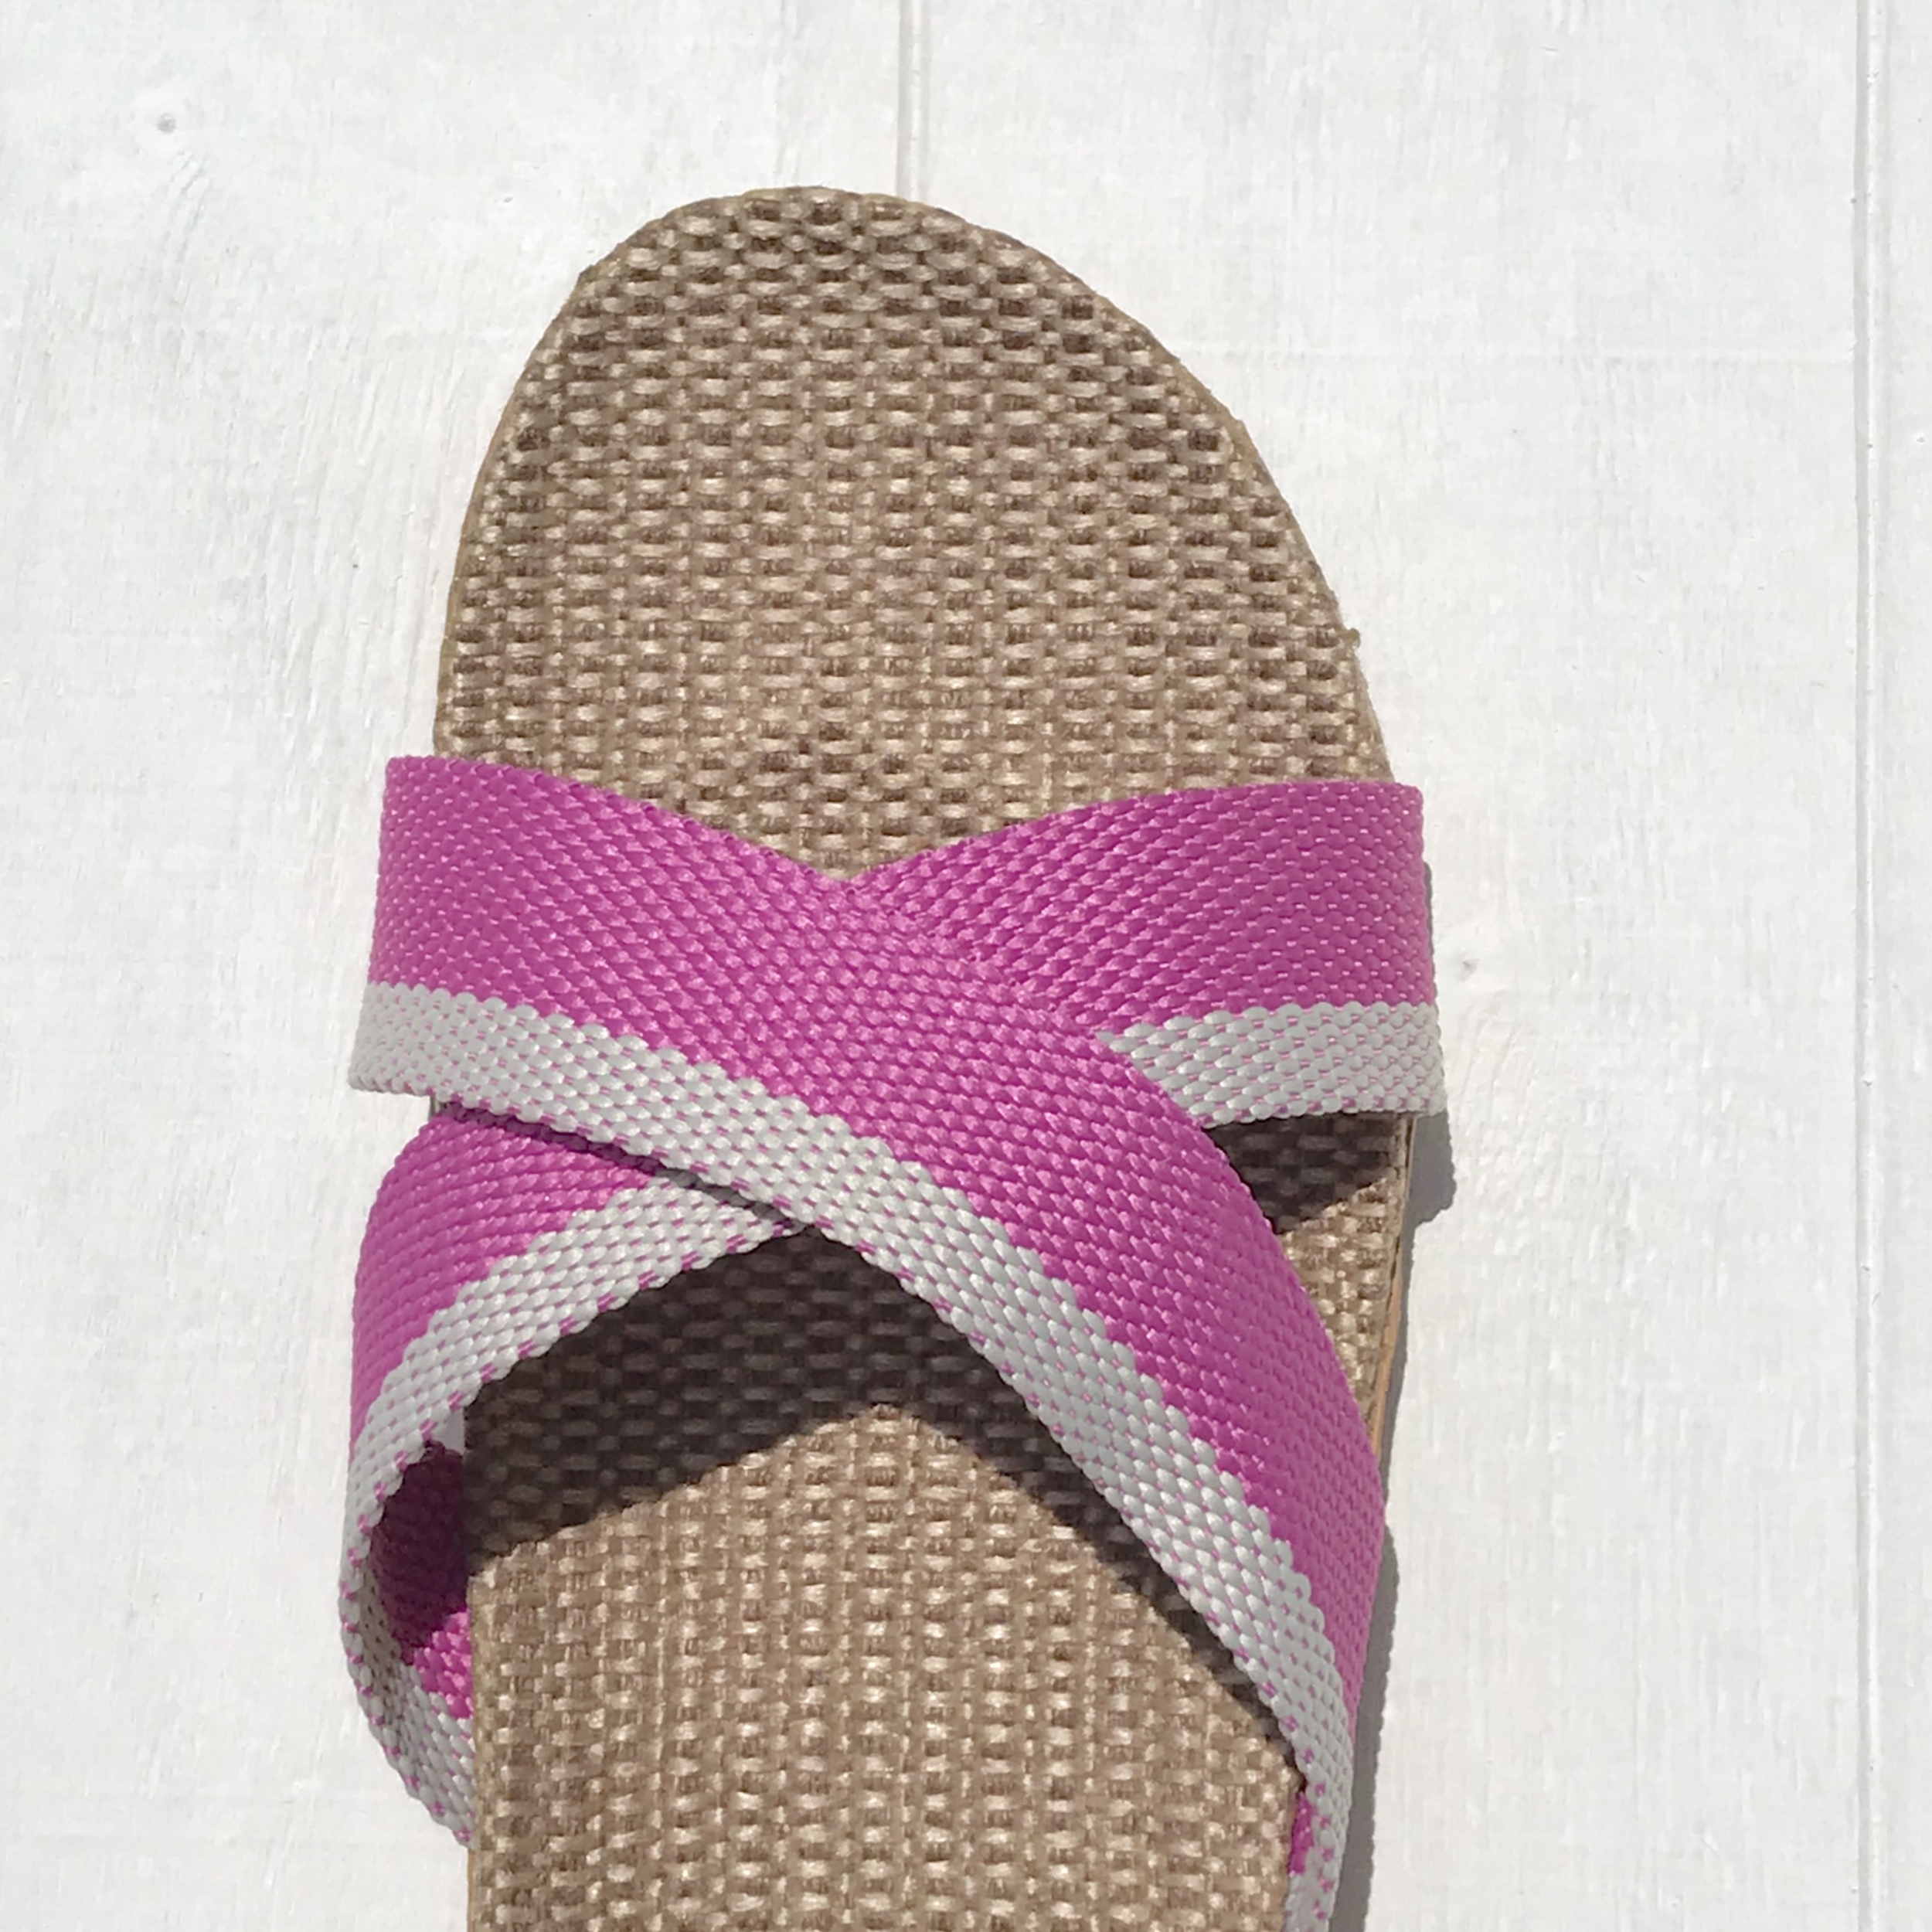 Patricia1 les mauricettes sandalettes de plage femme roses